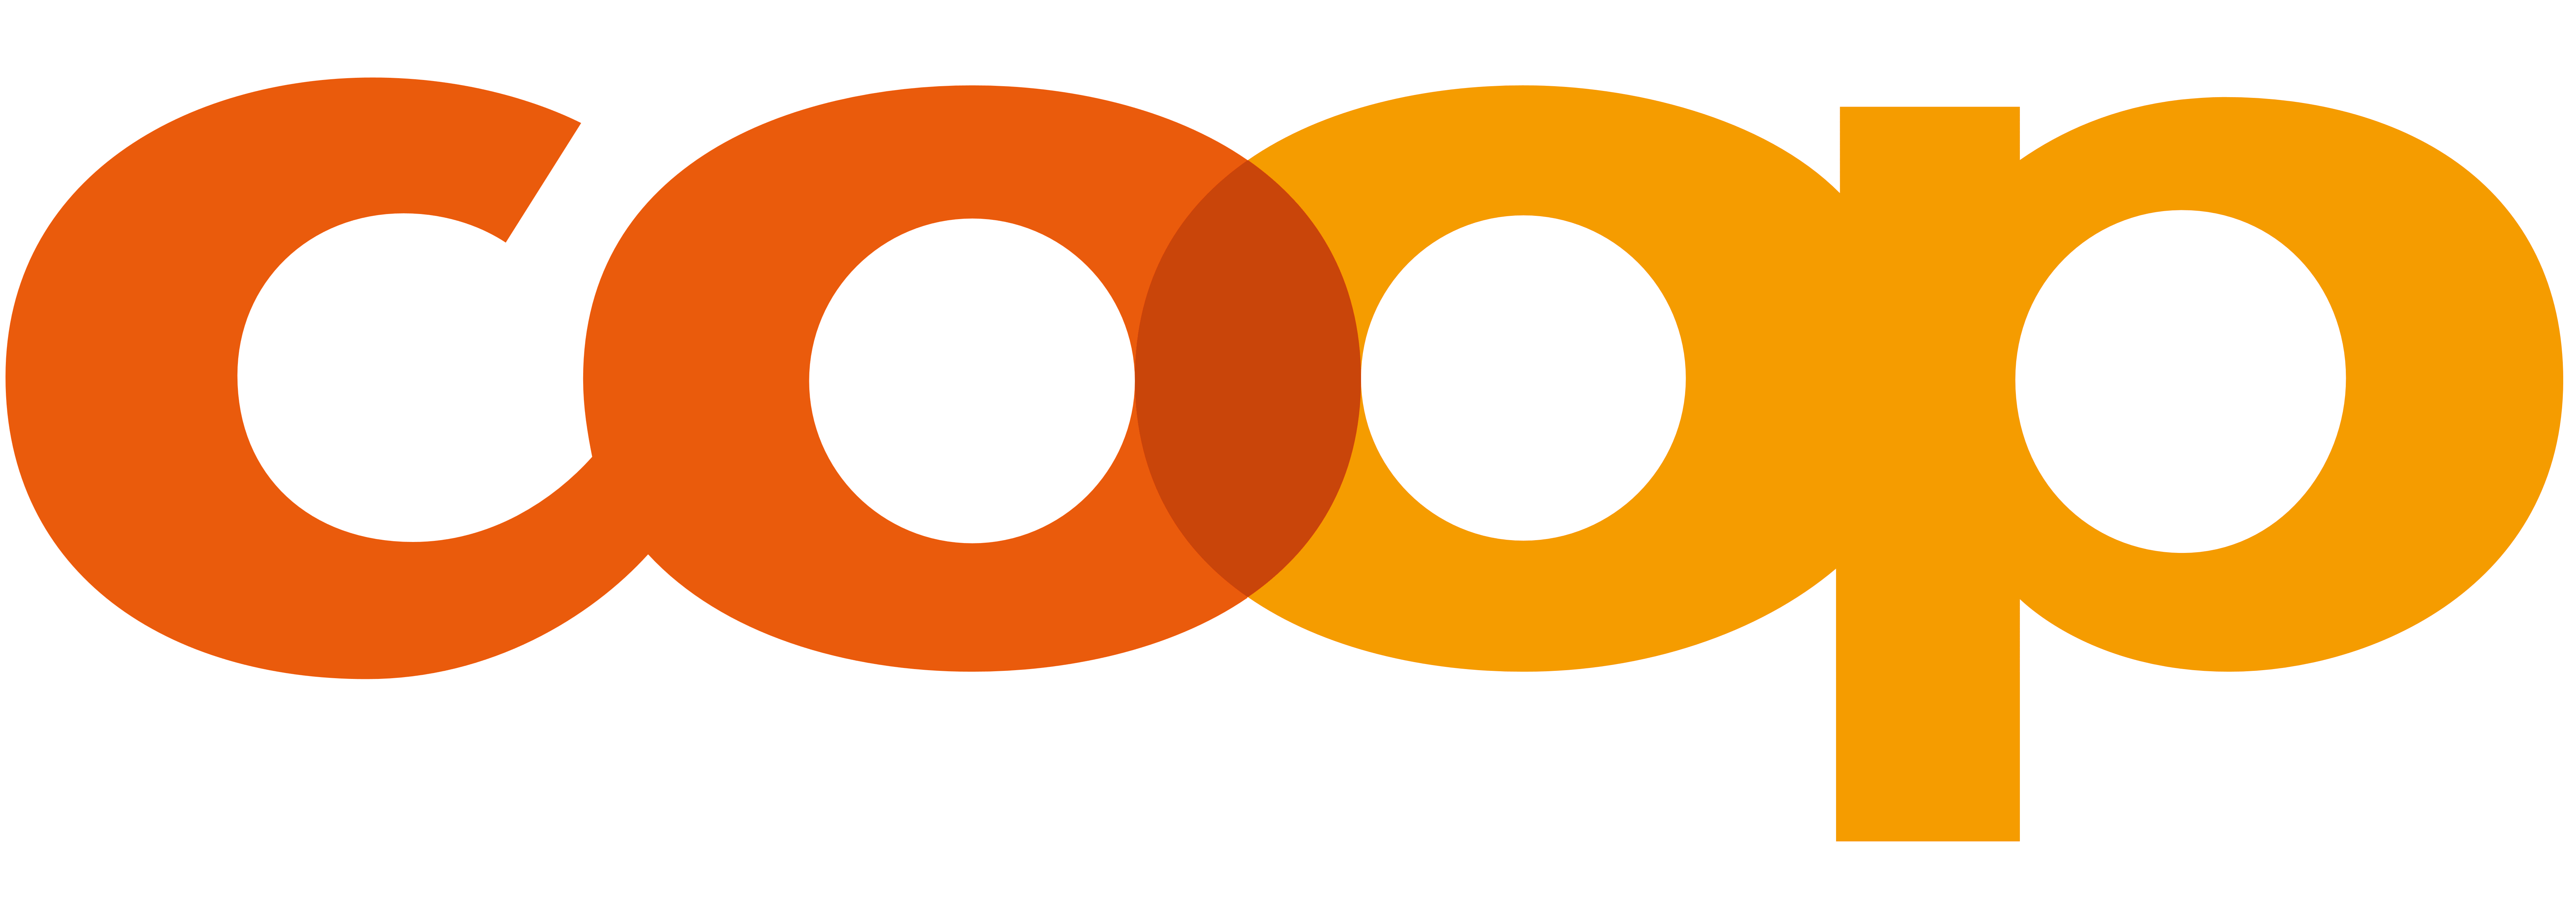 Coop logo, logotype